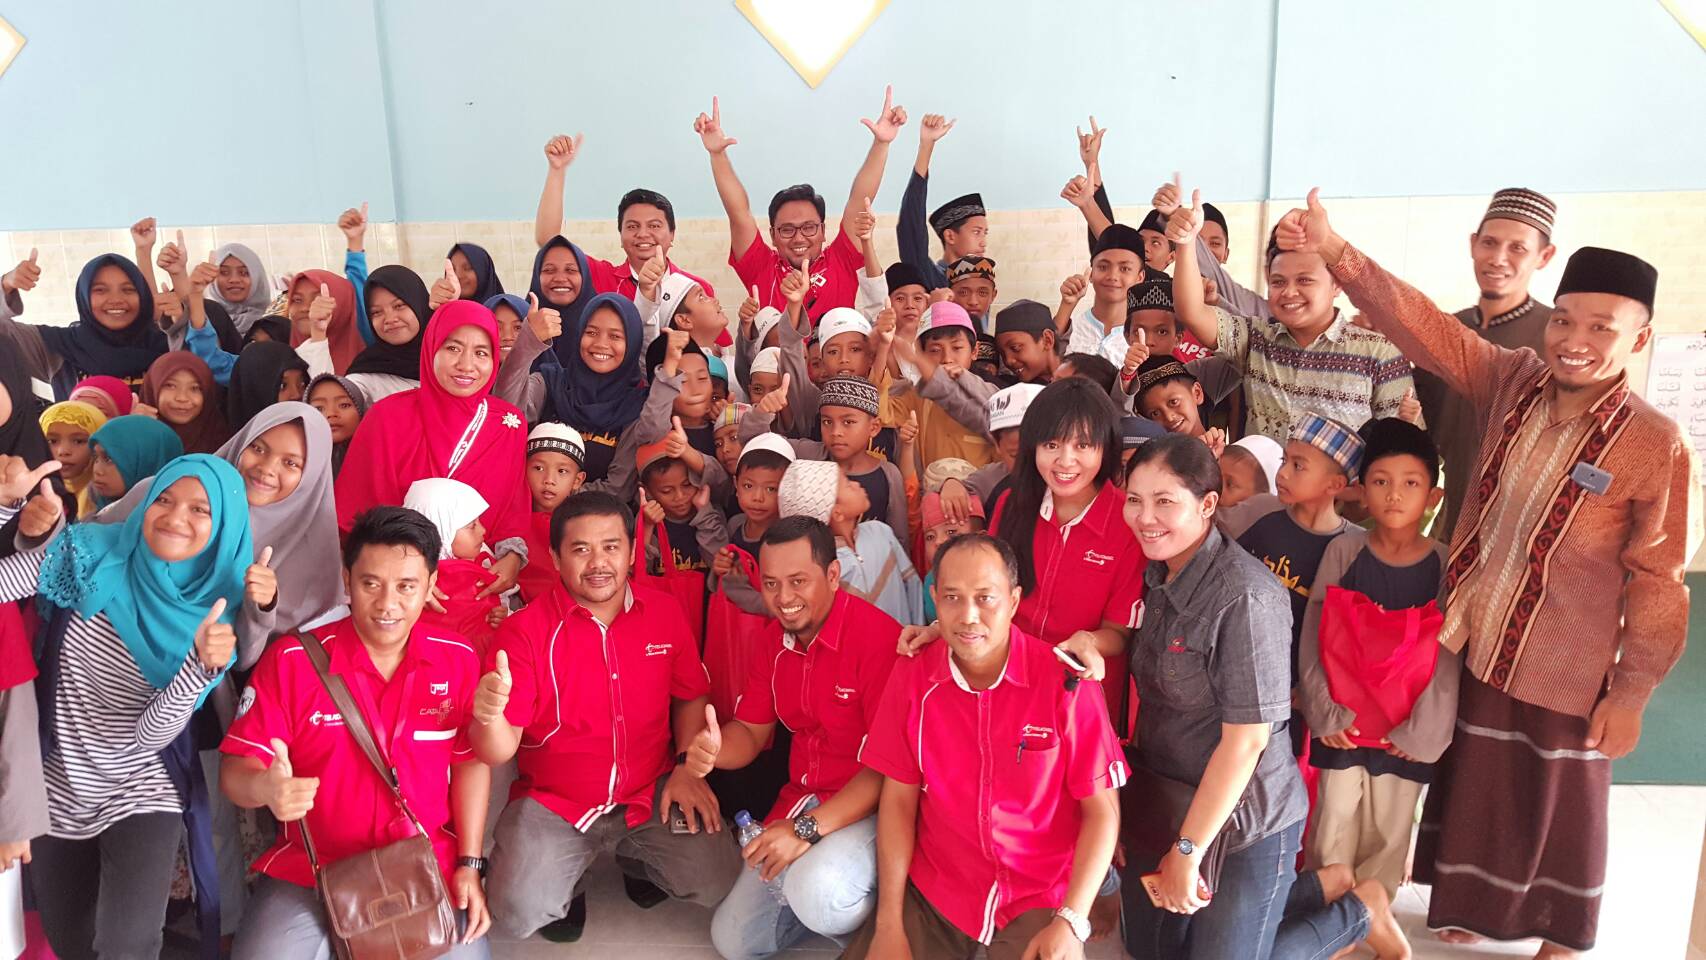 Program BERANDA Telkomsel Regional Bali Nusra di Pondok Pesantren Amal Mukhlisin